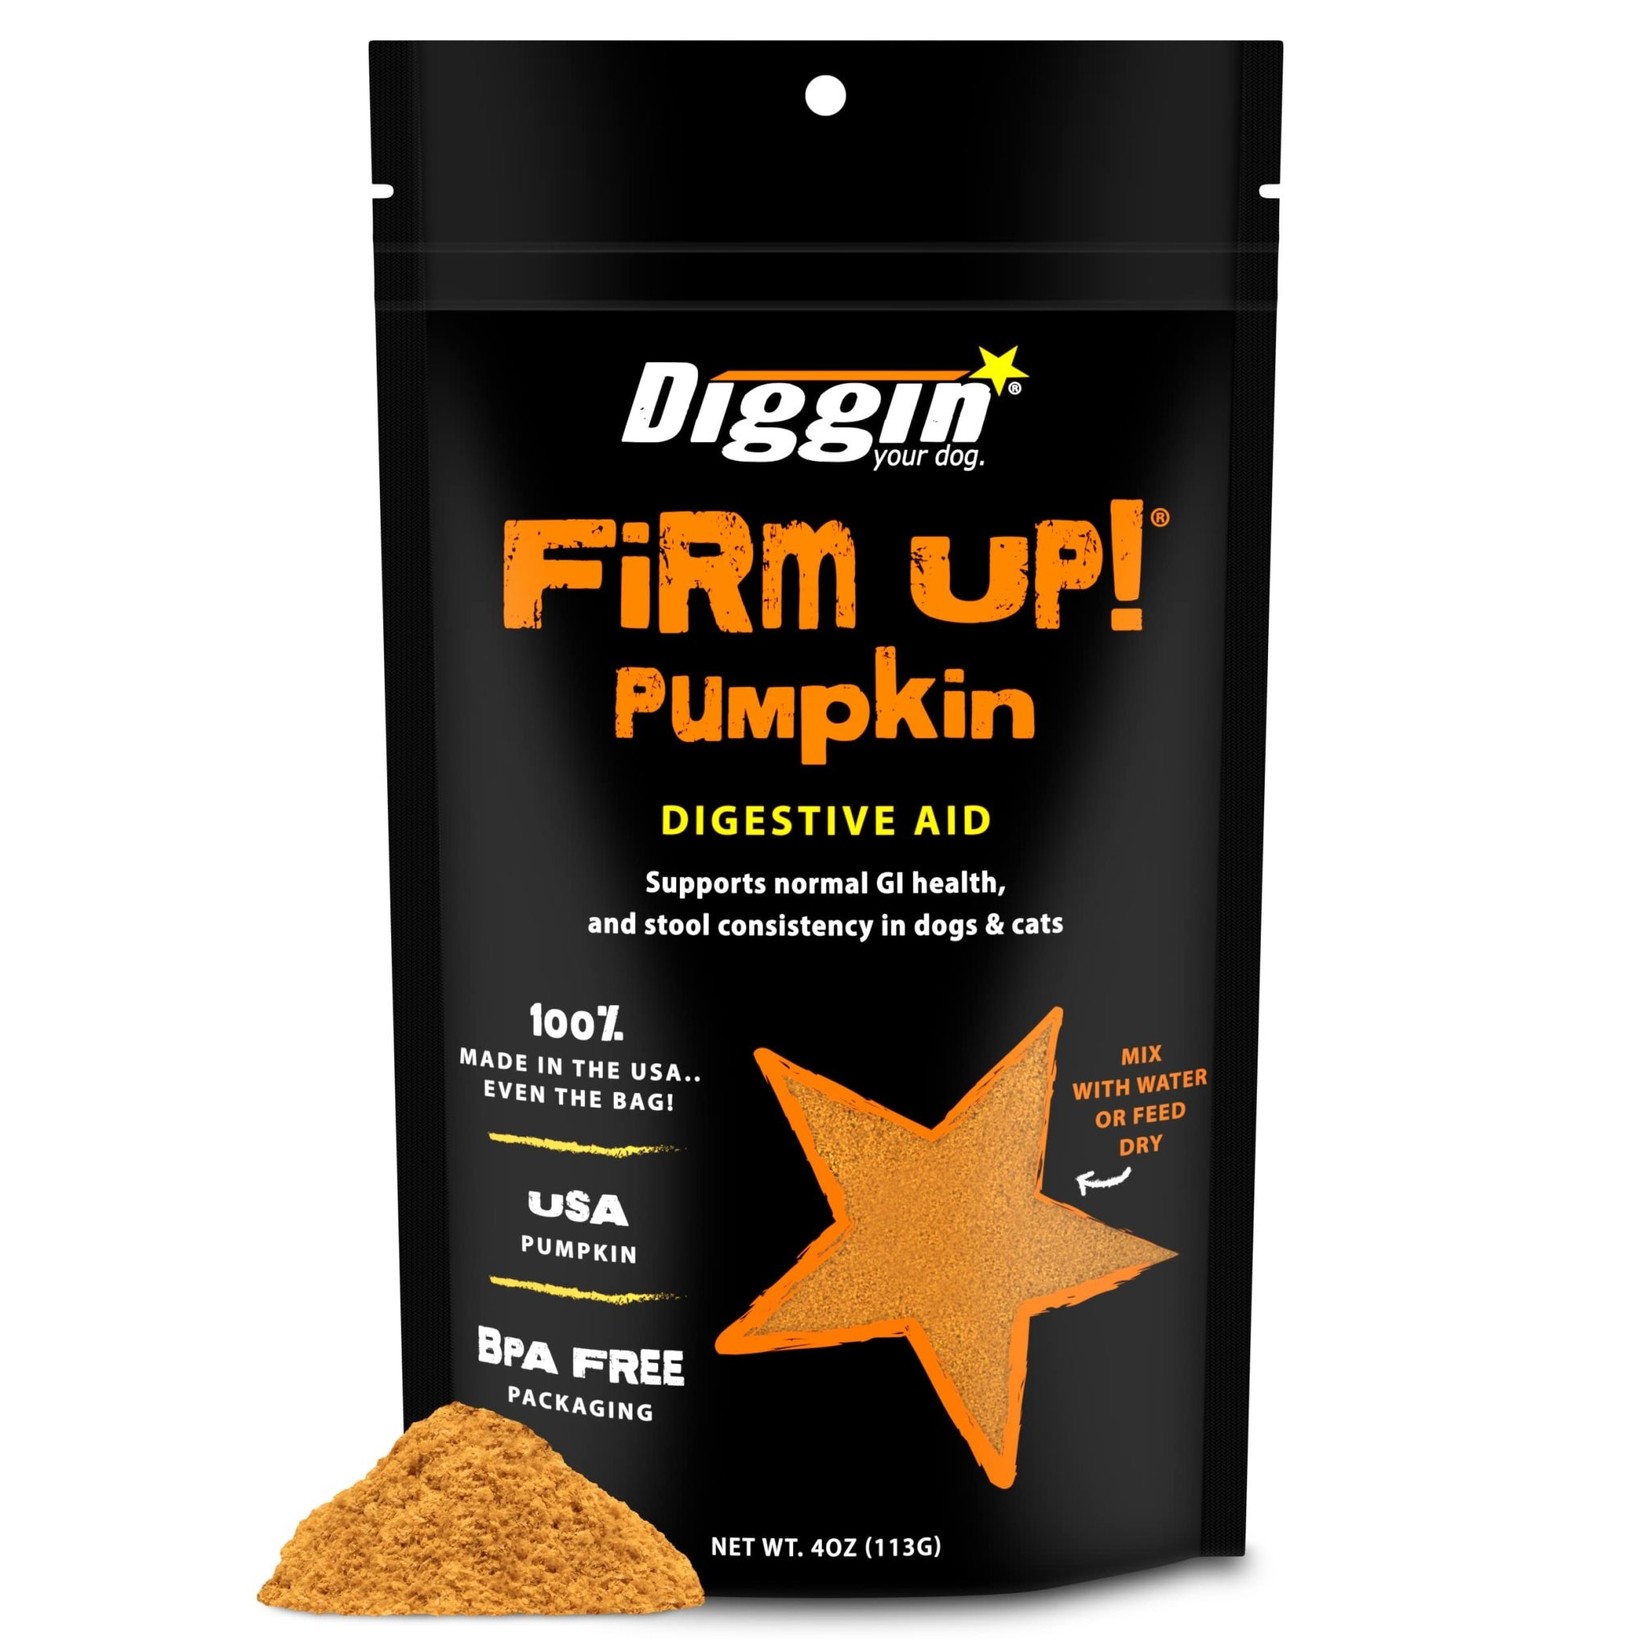 Diggin' FIRM UP Pumpkin Digestive Supplement